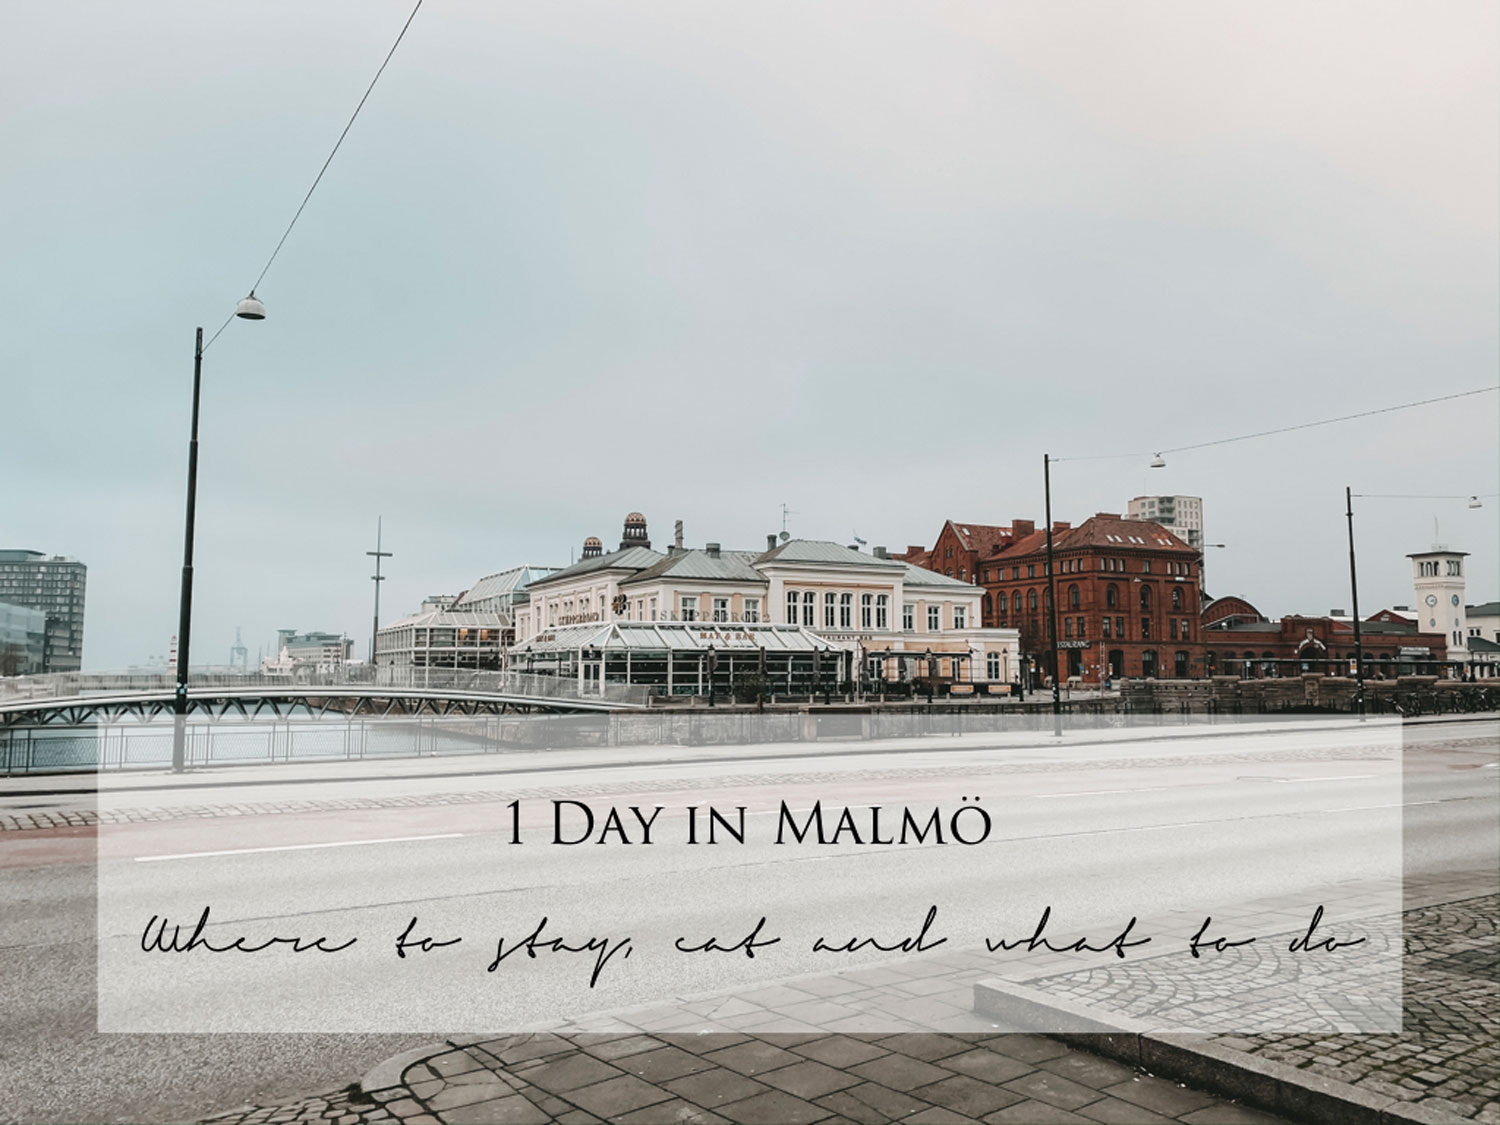 Tag in Malmö